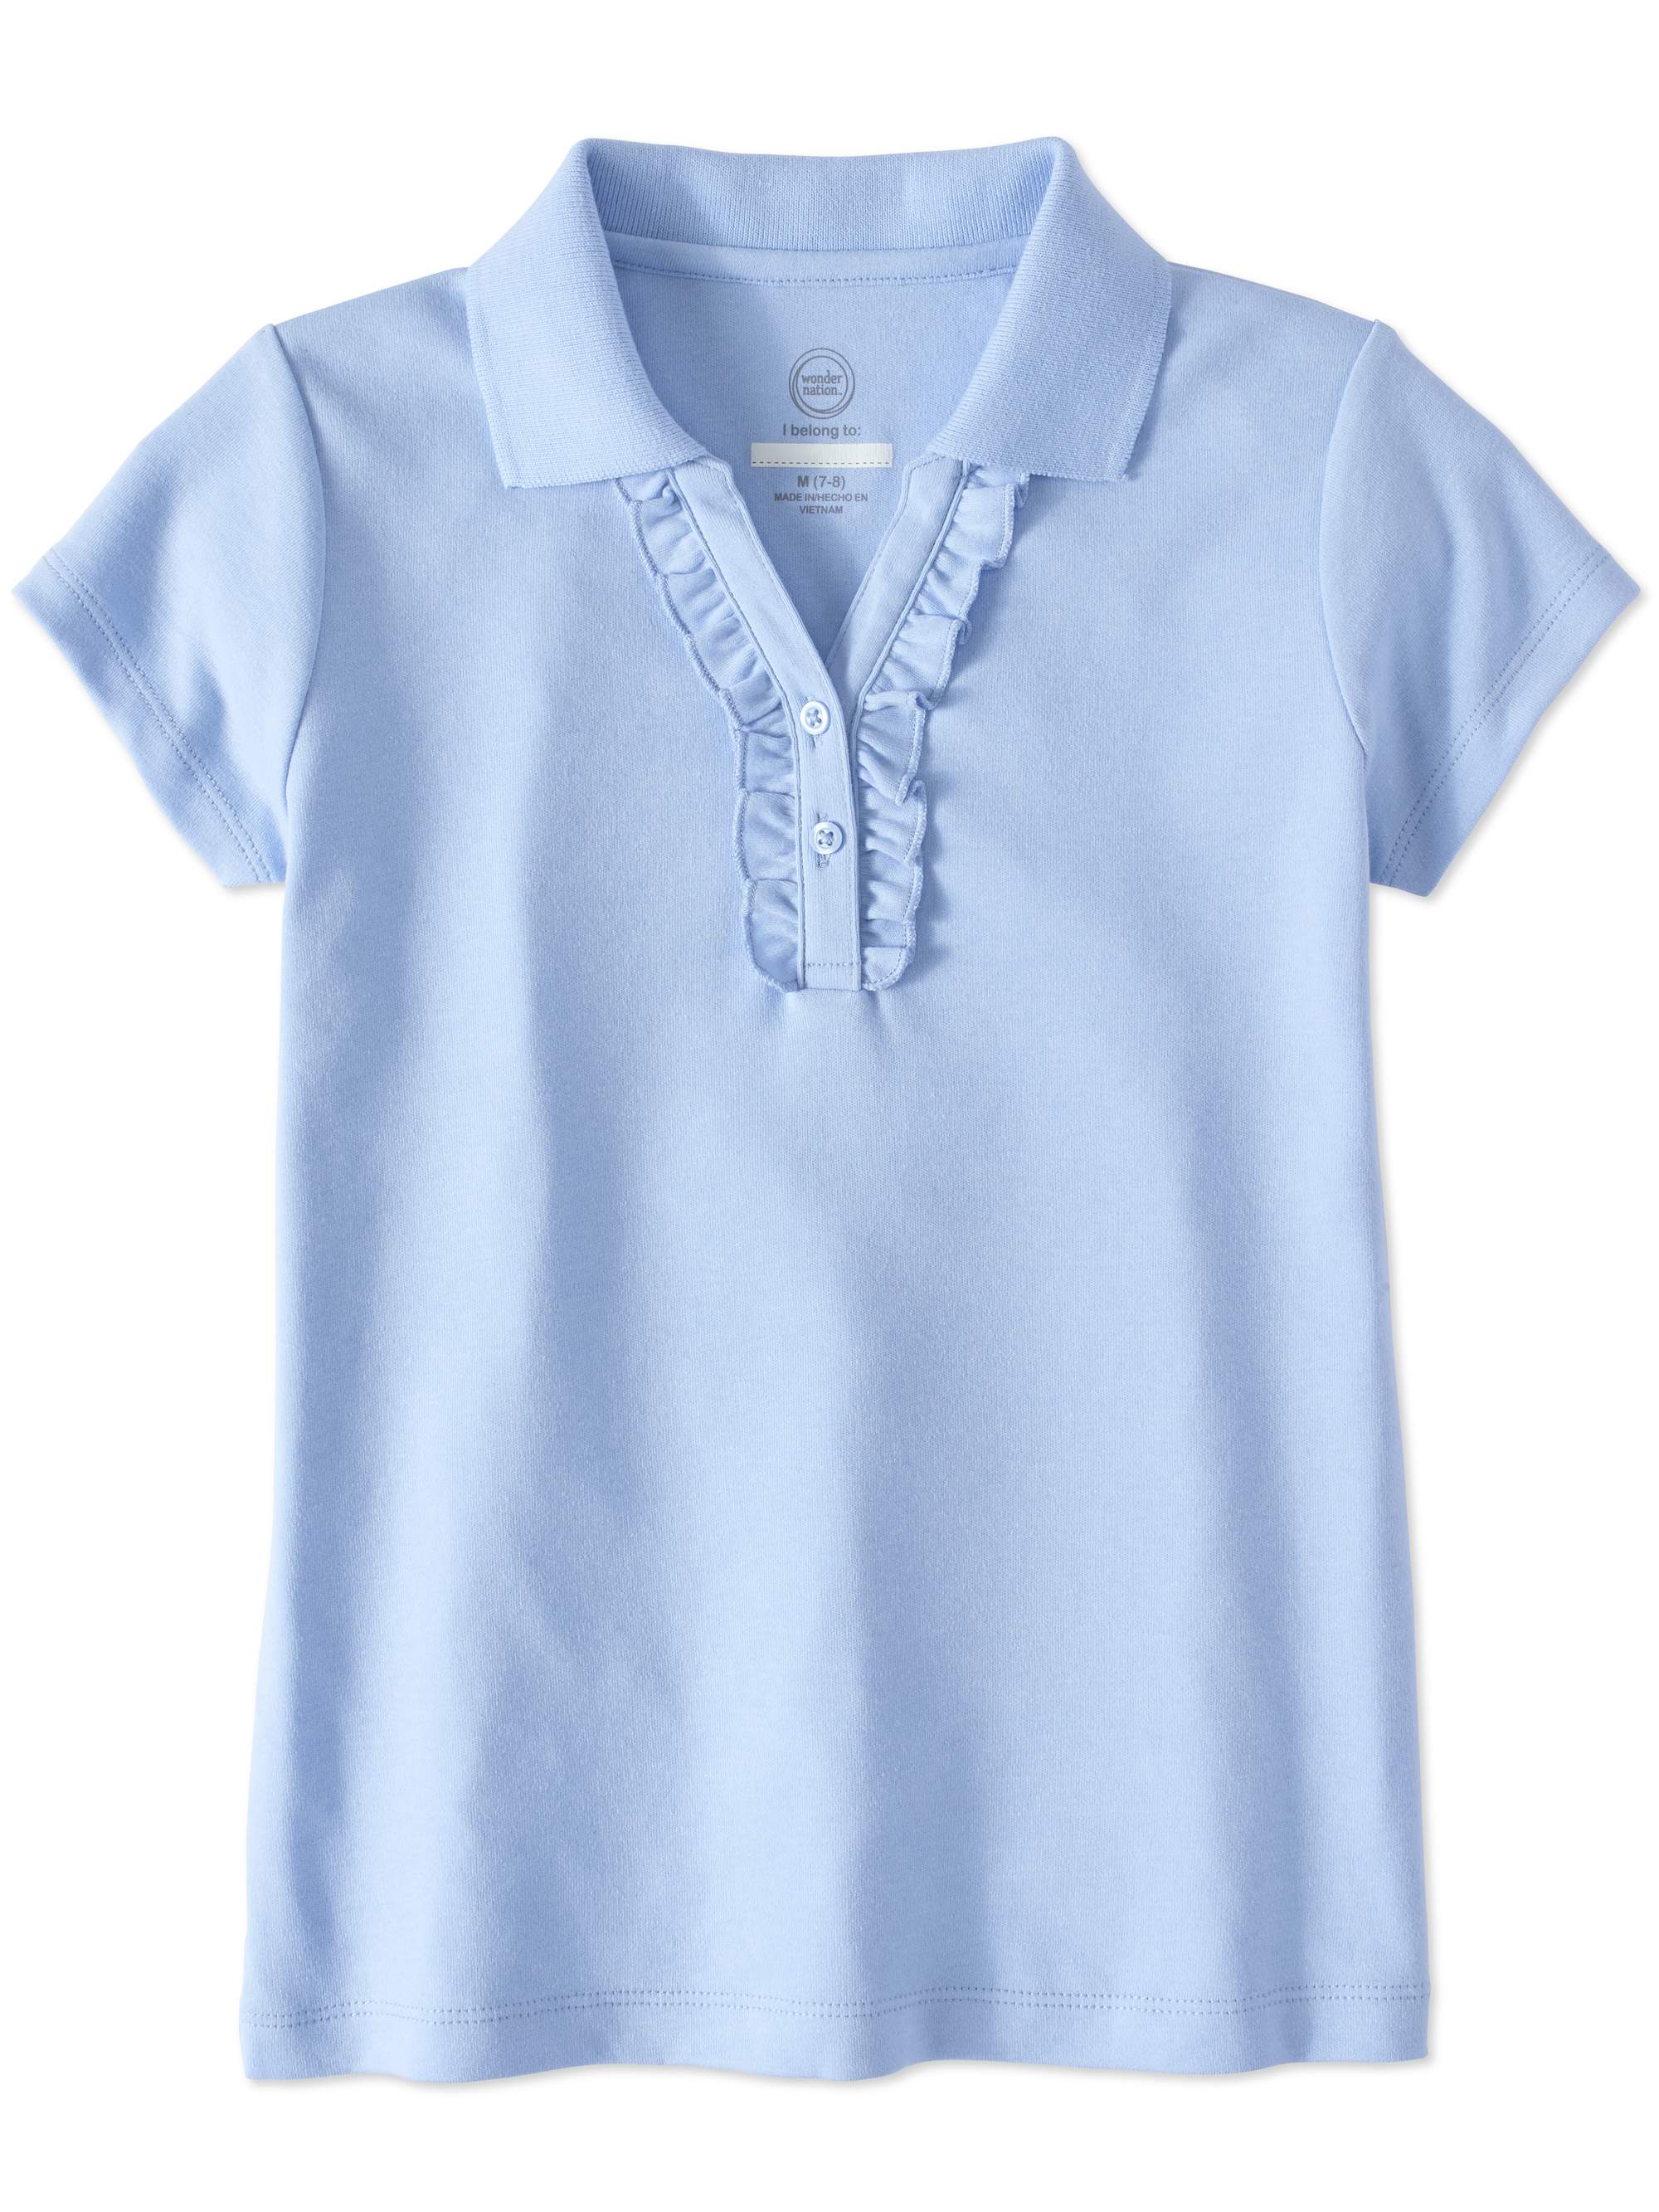 Wonder Nation Girls School Uniform Short Sleeve Ruffle Polo Shirt, Sizes 4-18 - image 1 of 3